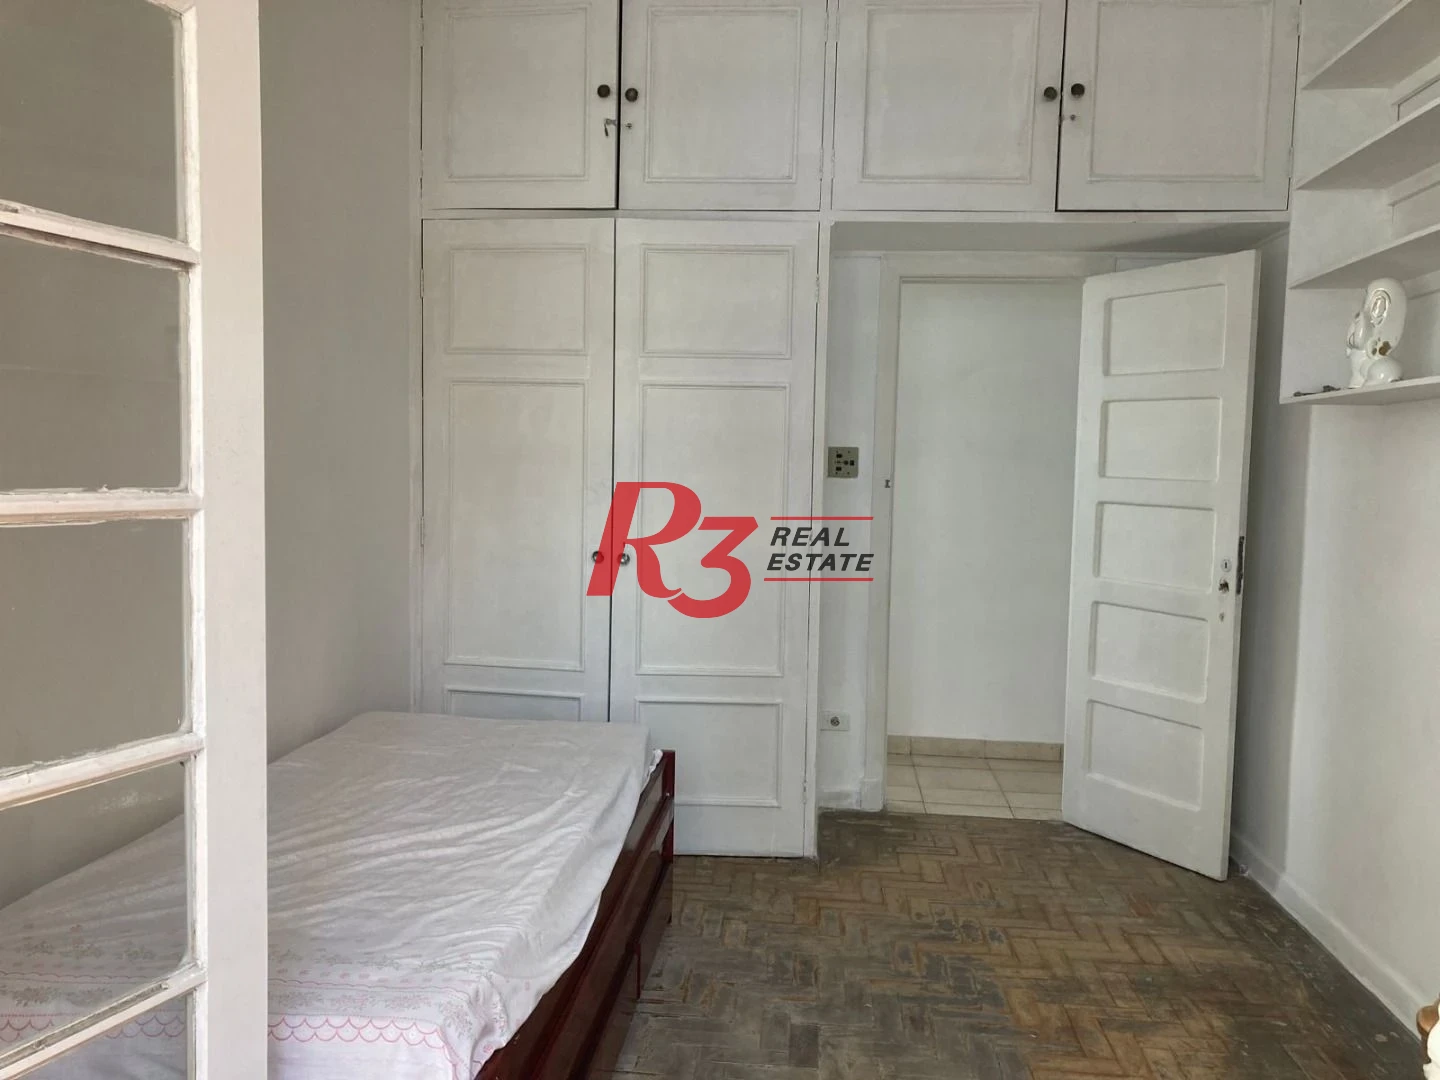 Apartamento com 3 dormitórios à venda, 110 m² por R$ 425.000,00 - Itararé - São Vicente/SP